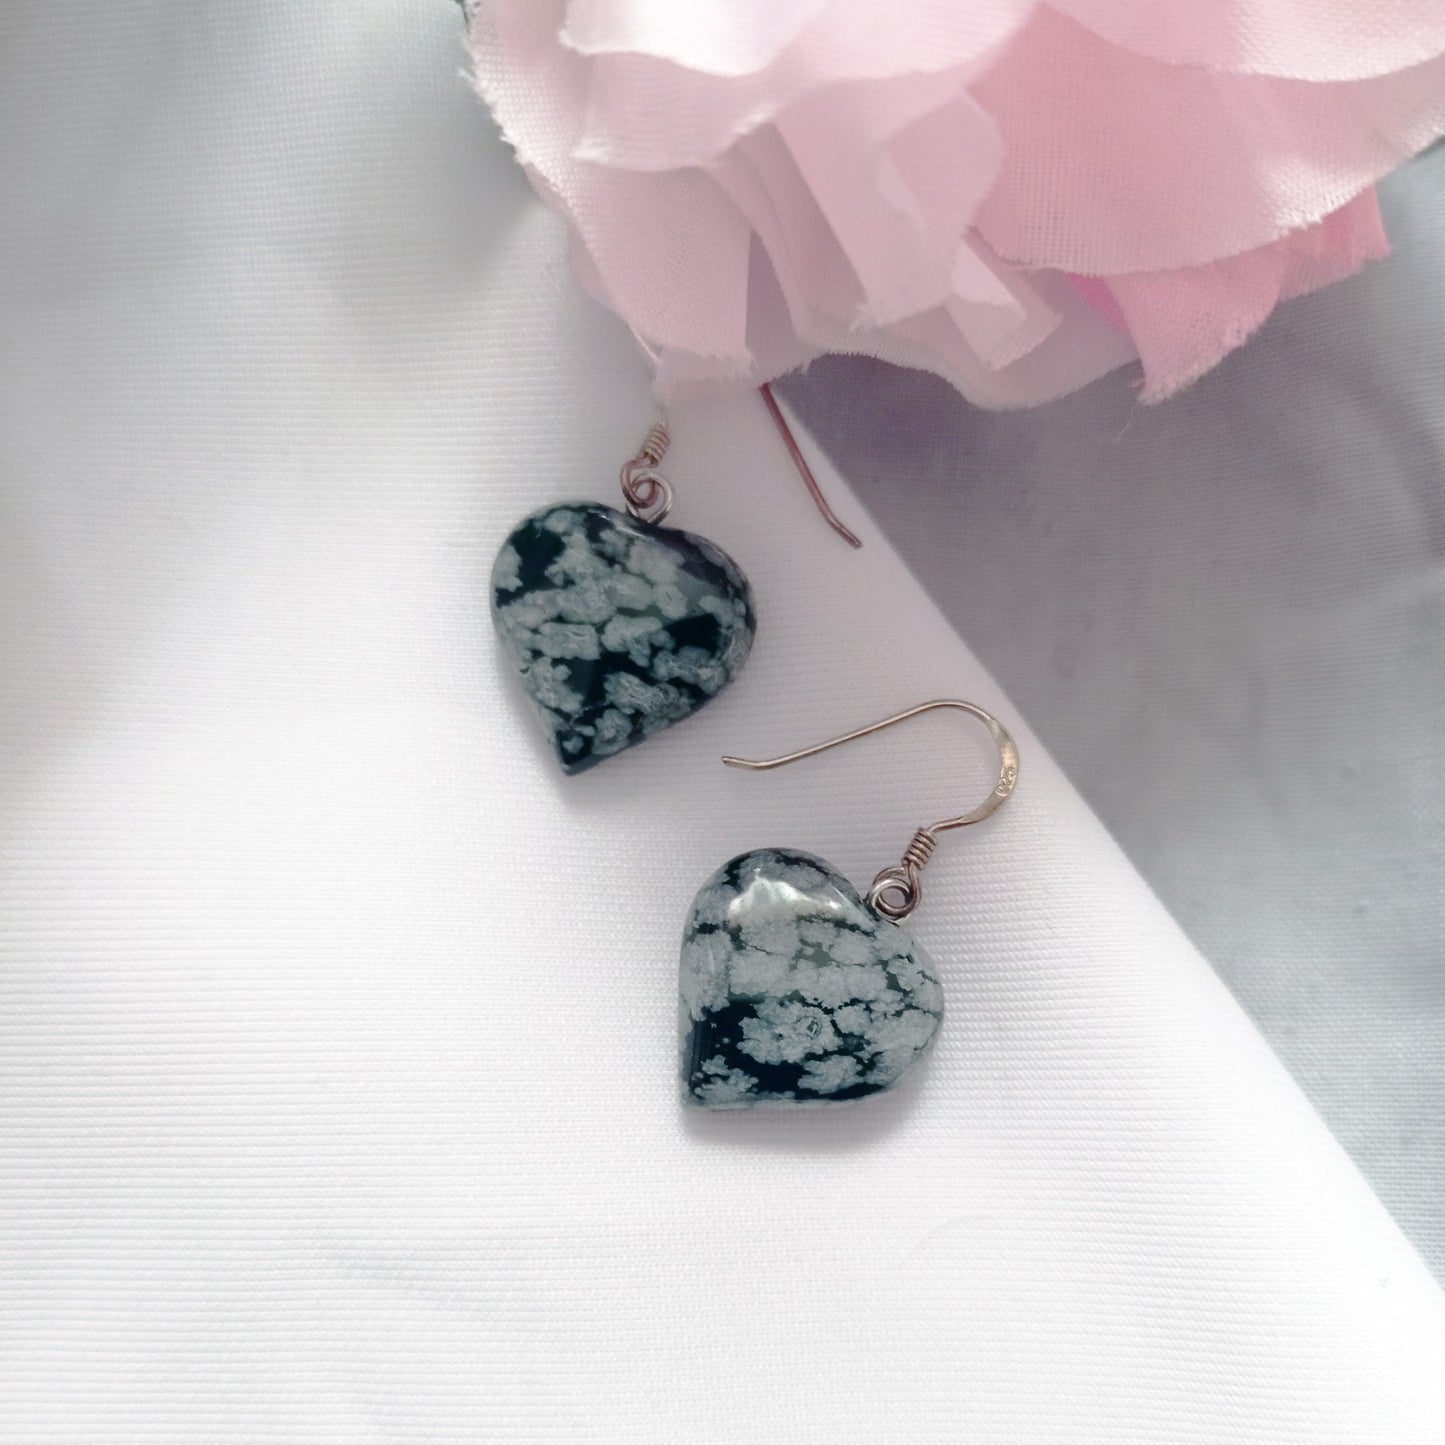 Snowflake Obsidian Drop Earrings, Heart Sterling Silver Drop Earrings, Gemstone Earrings | by nlanlaVictory-4